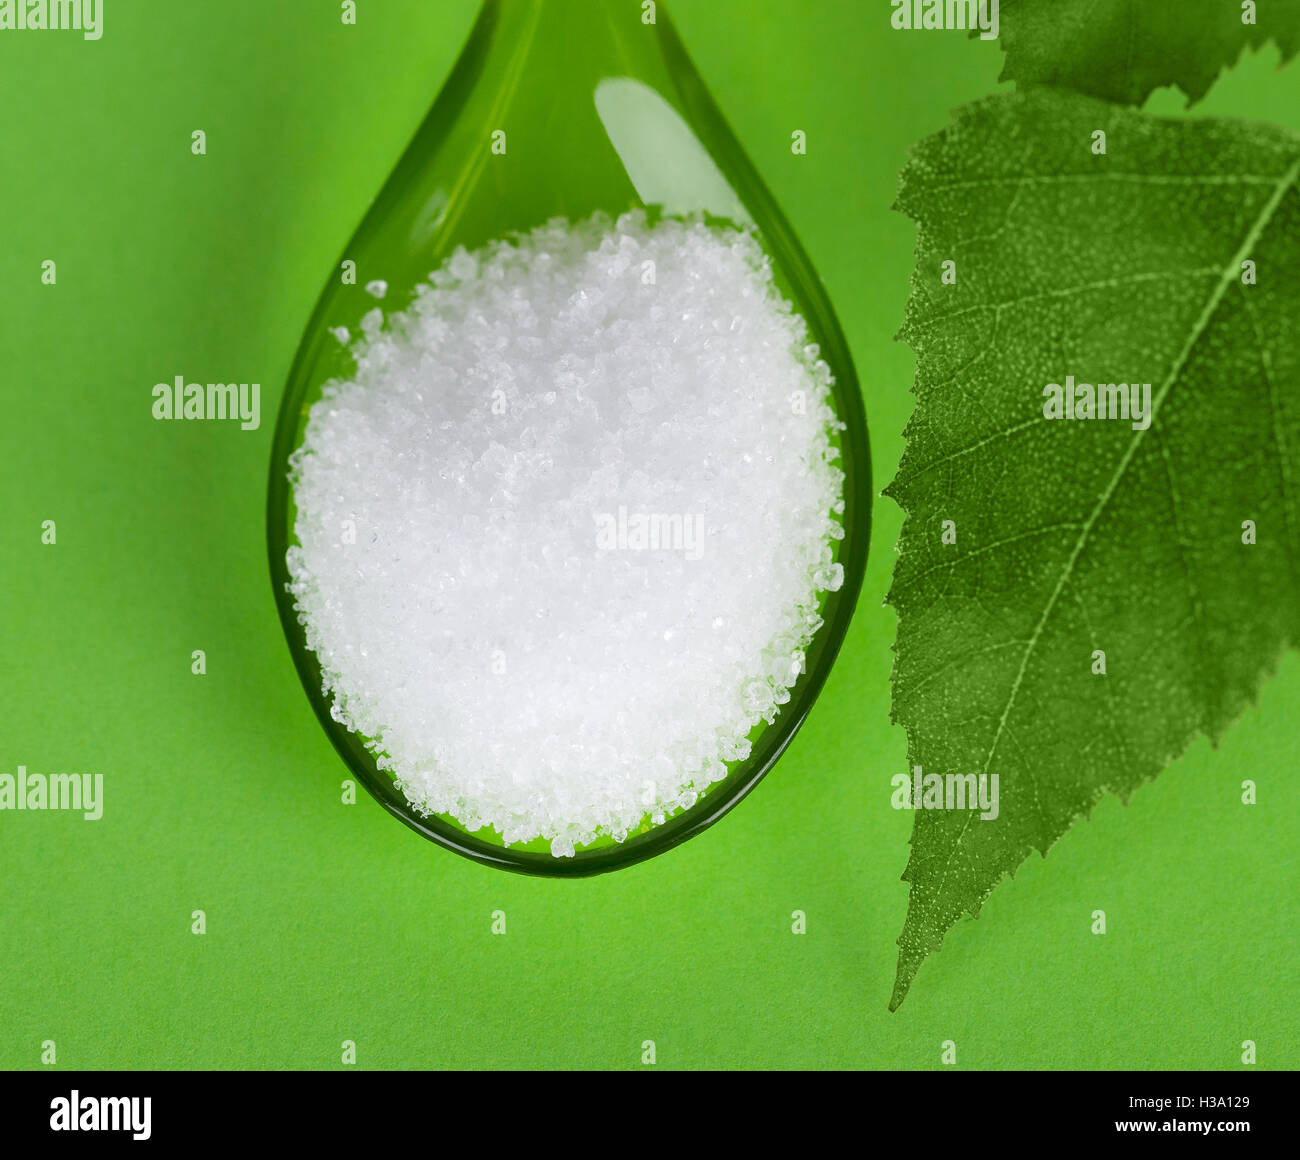 El Xilitol azúcar de abedul en cuchara de plástico con hojas de abedul sobre fondo verde. Sustituto de alcohol de azúcar blanco granulado. Foto de stock